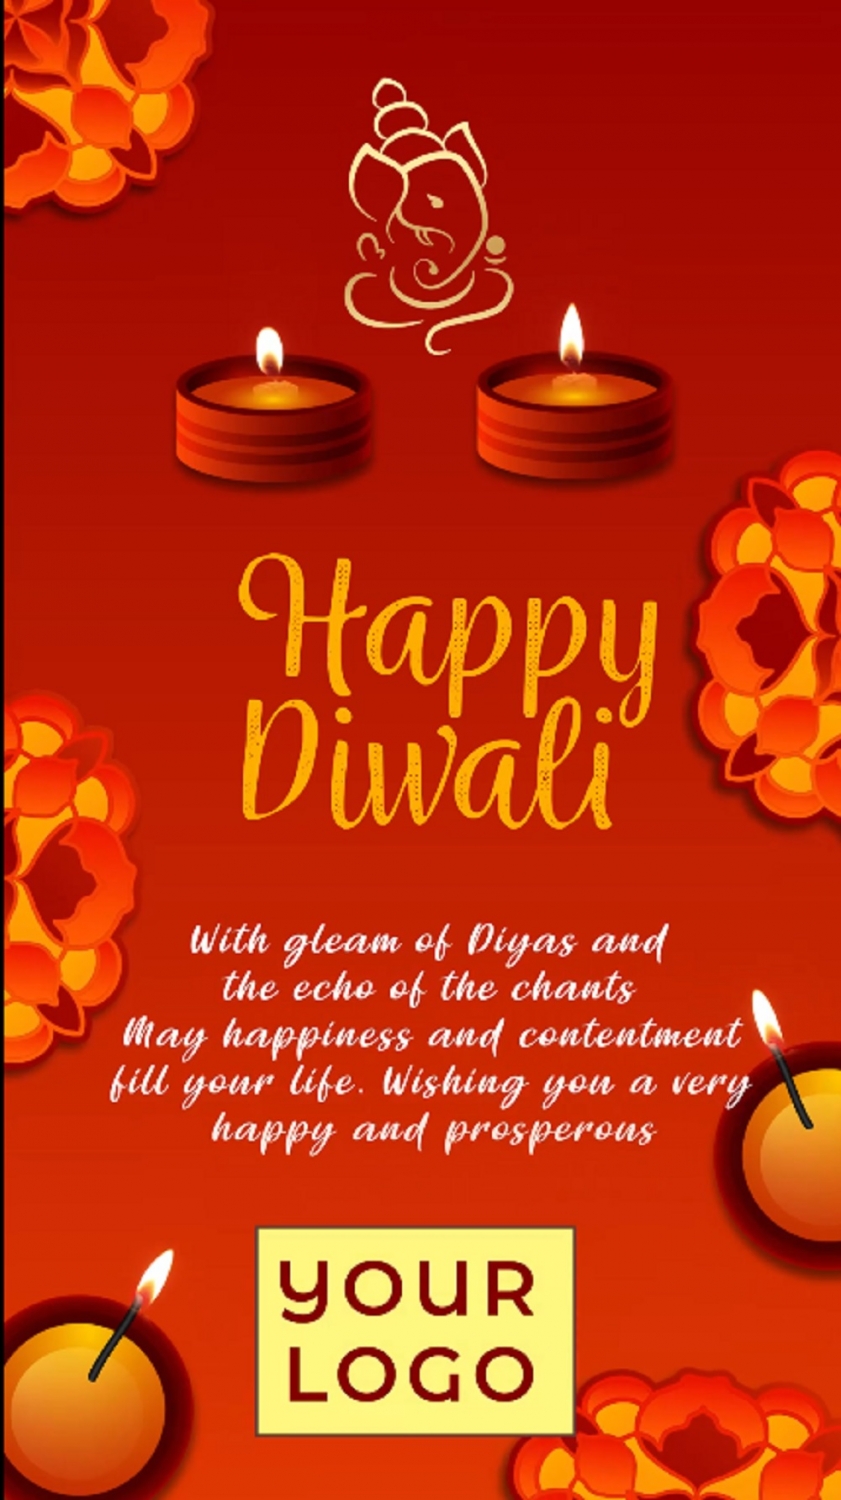 Diwali Card Design Download - FREE Vector Design - Cdr, Ai, EPS, PNG, SVG